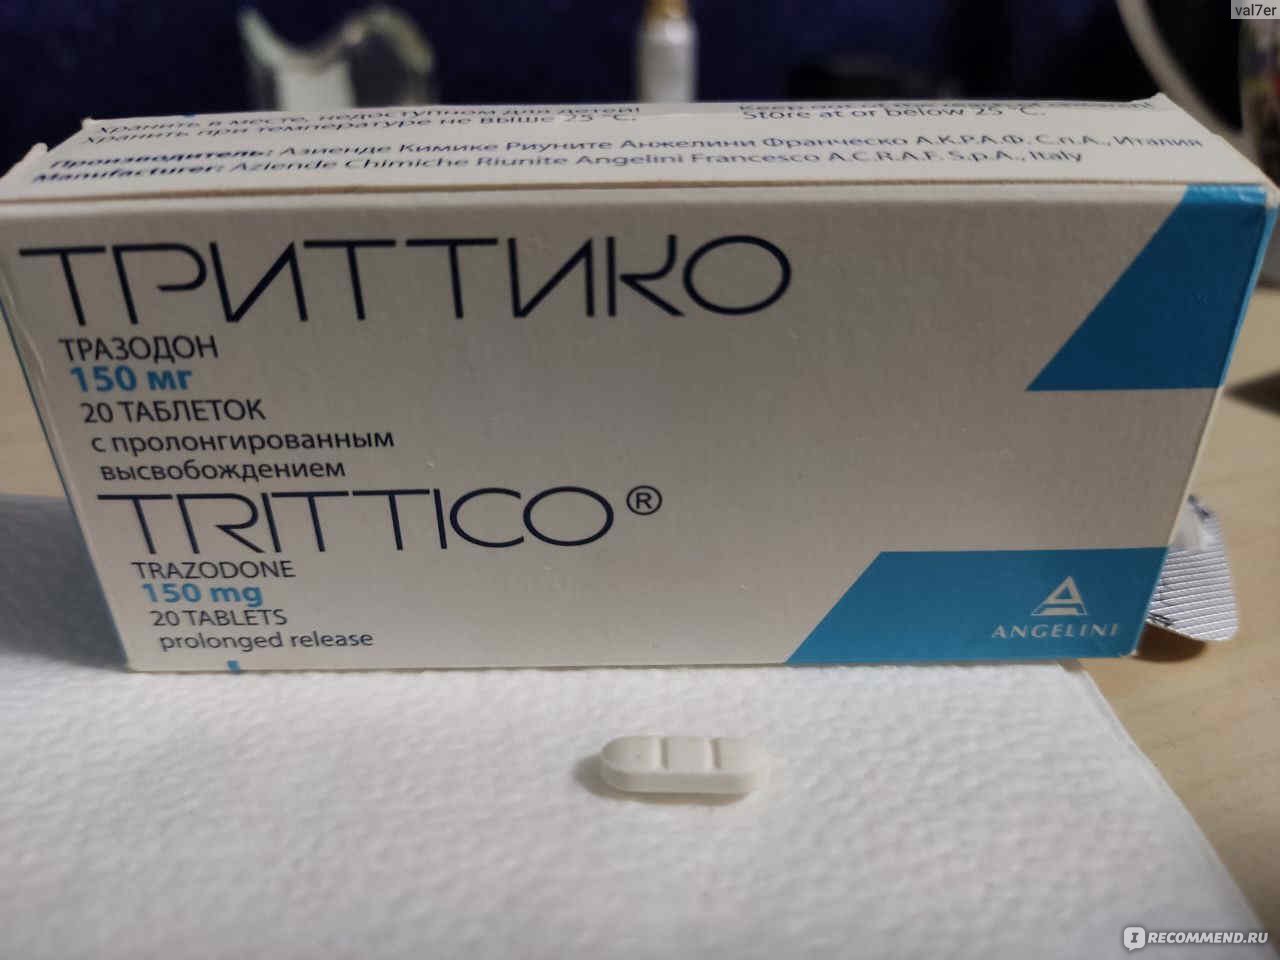 Антидепрессанты отзывы пациентов принимавших. Триттико. Лекарственные препараты Триттико. Триттико фото. Триттико таблетки риска.